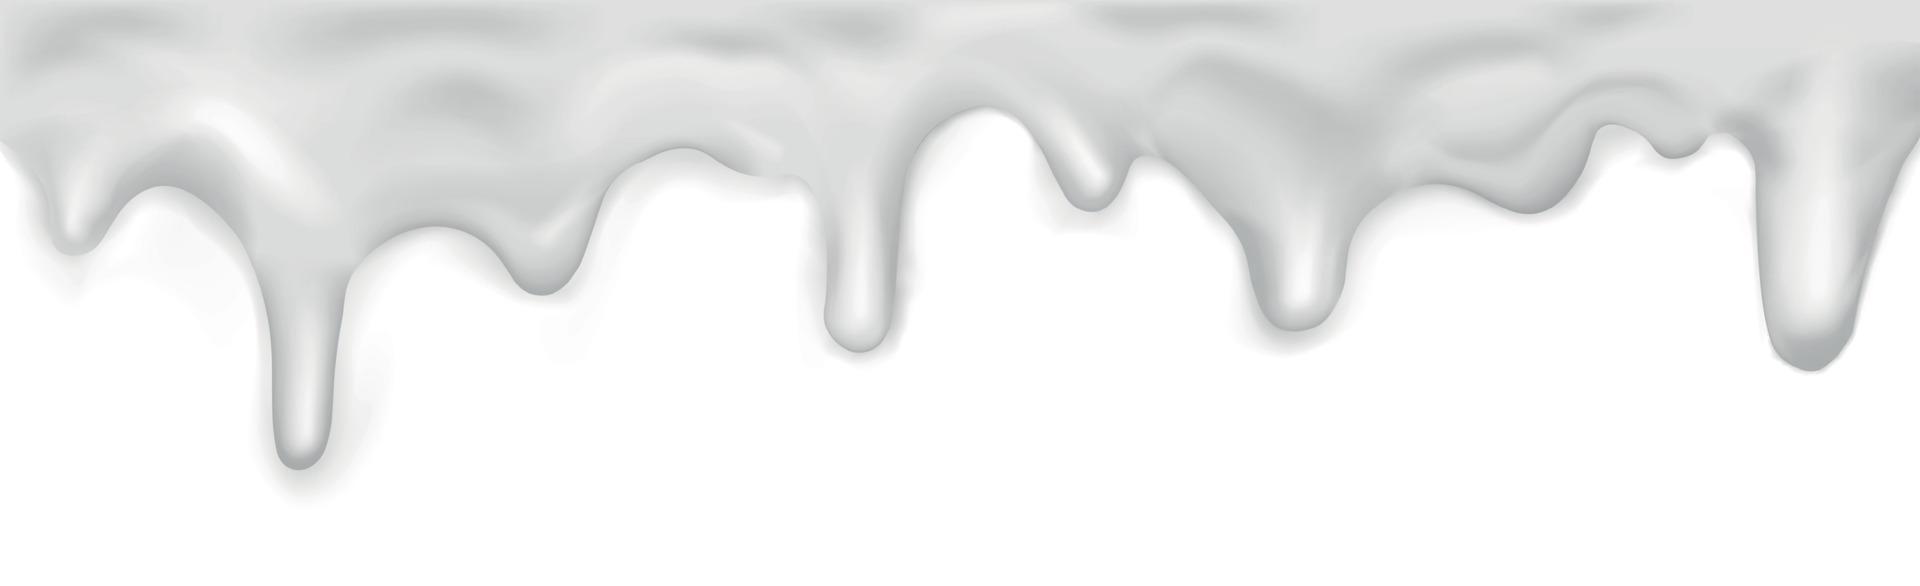 caramelo pingando branco, padrão em fundo branco - vector